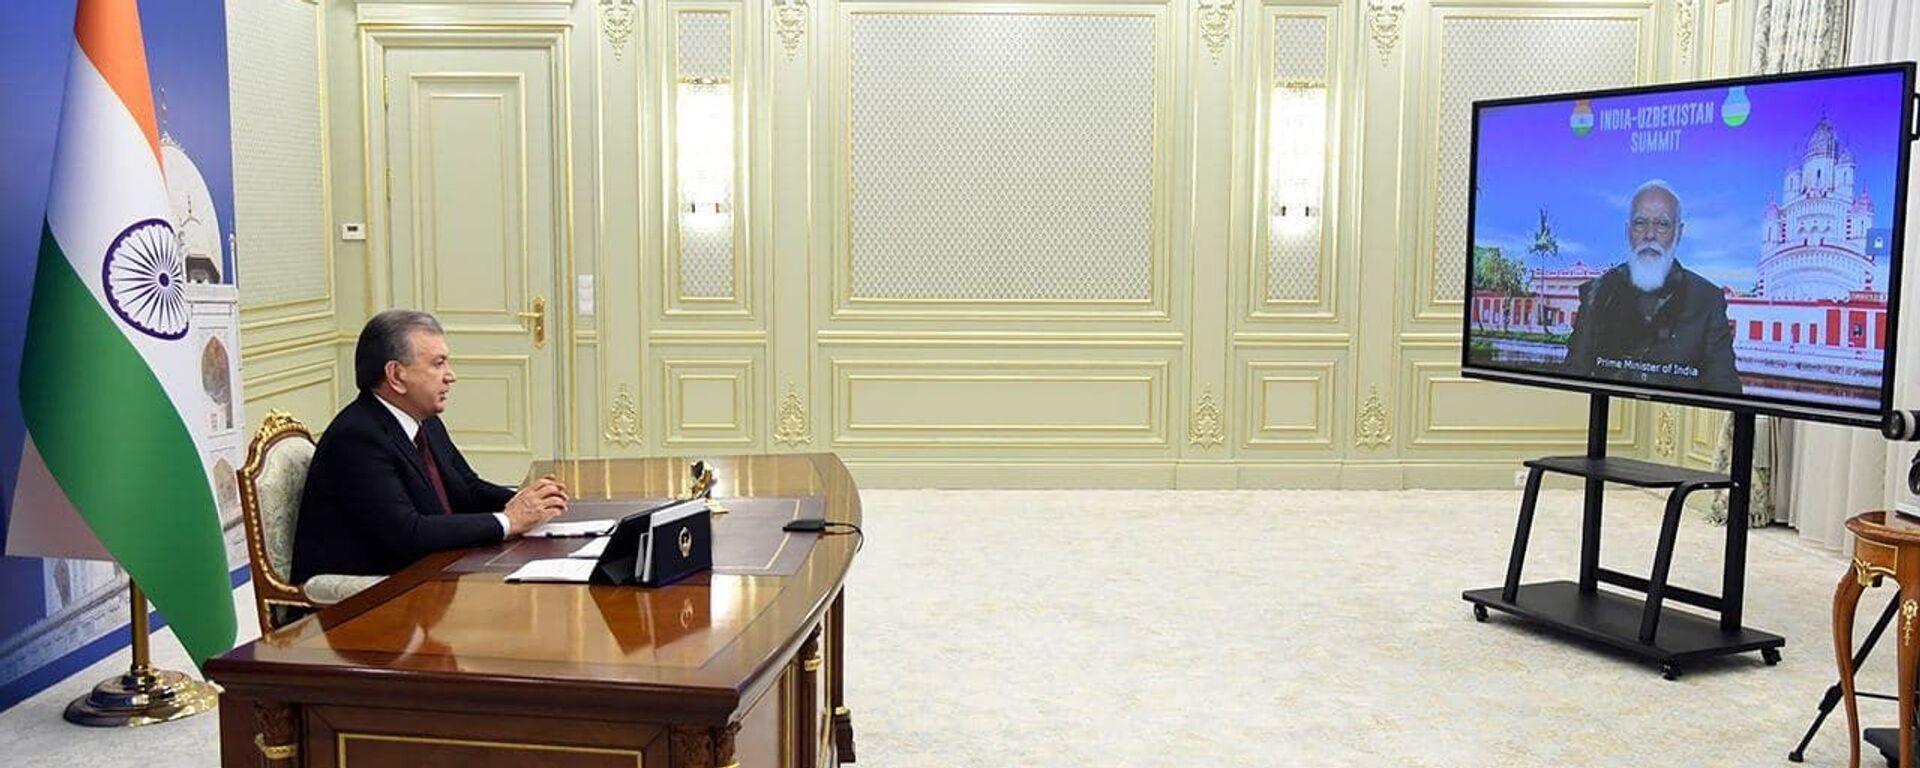 Президент Республики Узбекистан Шавкат Мирзиёев провел встречу с Премьер-министром Республики Индия Нарендрой Моди в формате видеоконференции - Sputnik Узбекистан, 1920, 11.12.2020